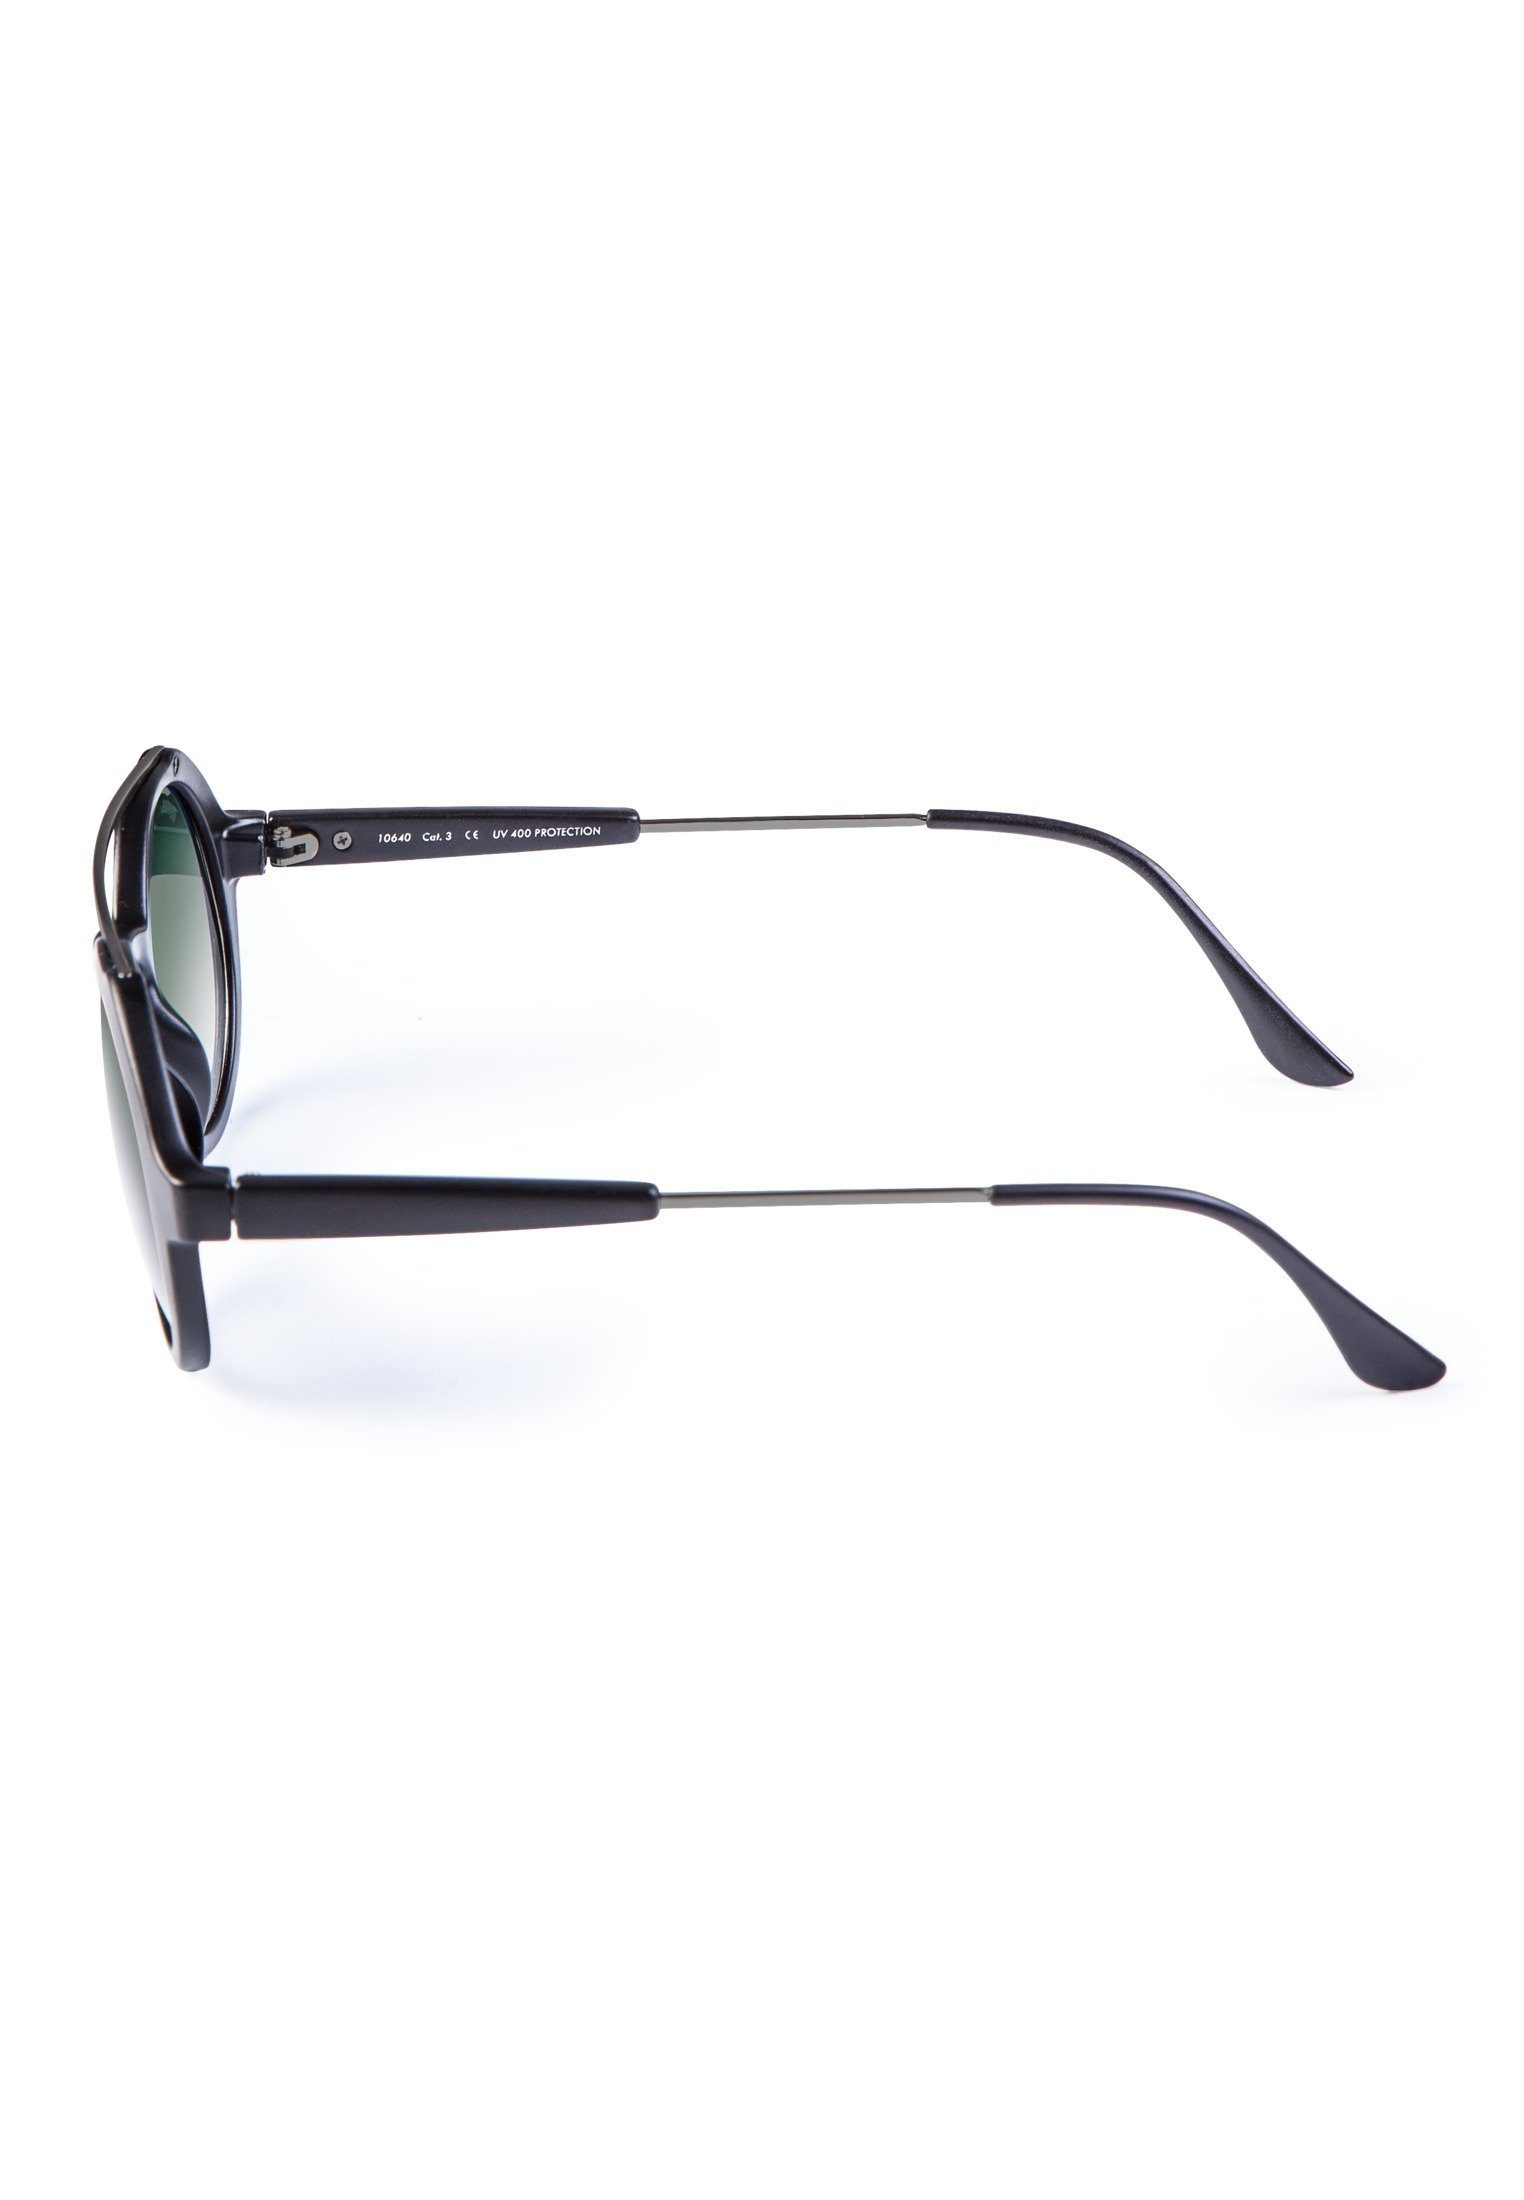 Accessoires MSTRDS Sonnenbrille Sunglasses Space Retro blk/grn